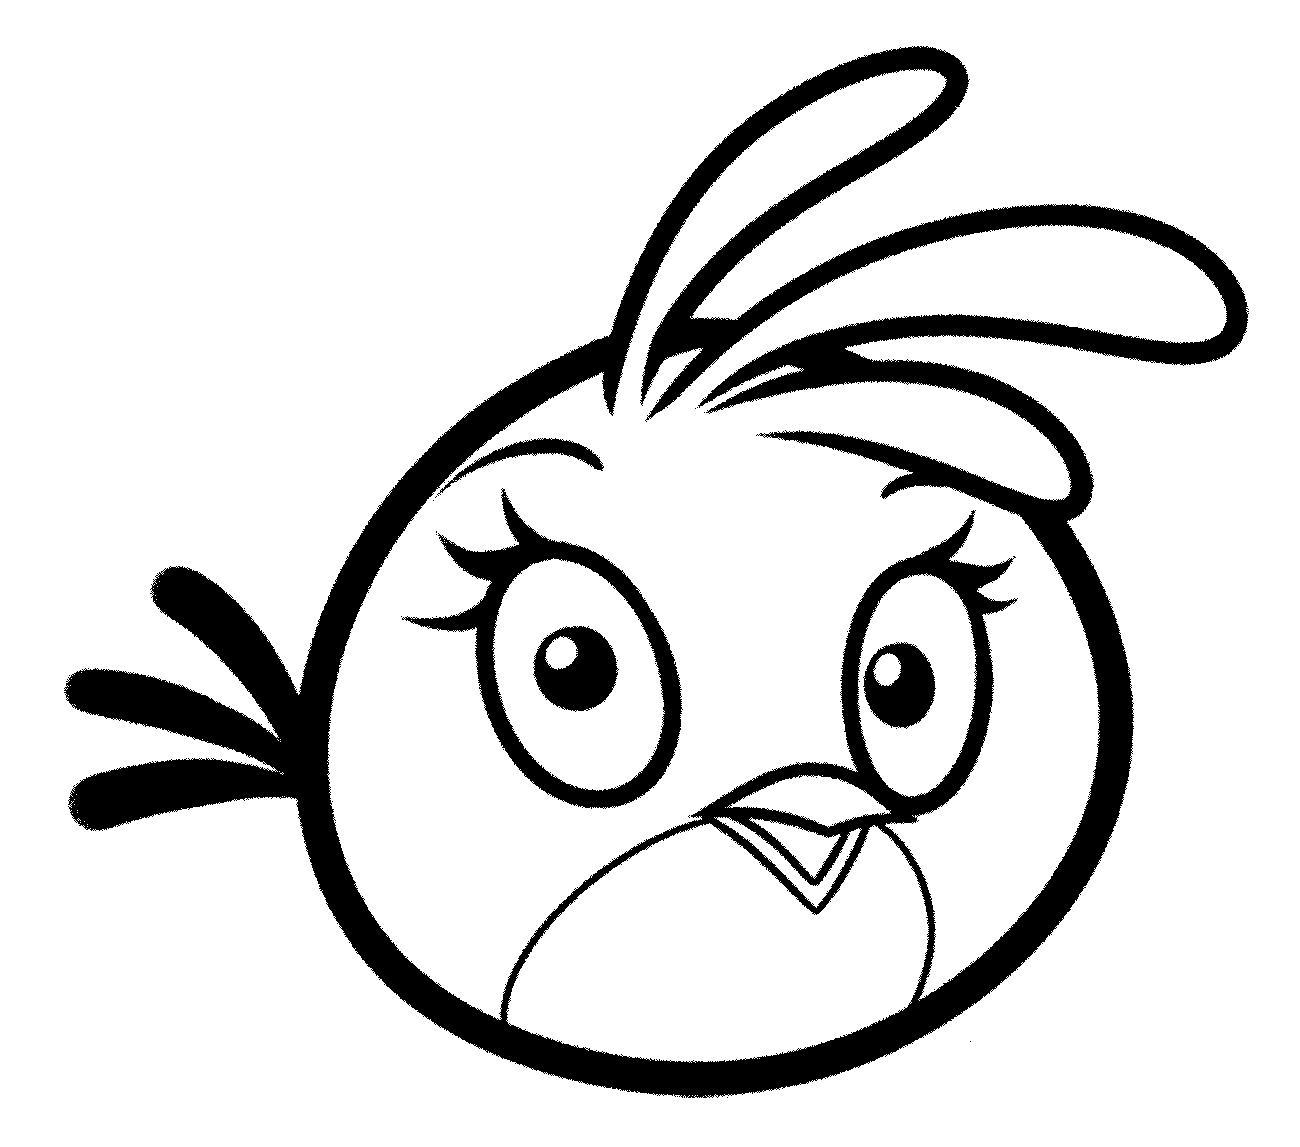 Mewarnai Gambar Angry Birds Untuk Putra Putri Anda Mewarnai Gambar